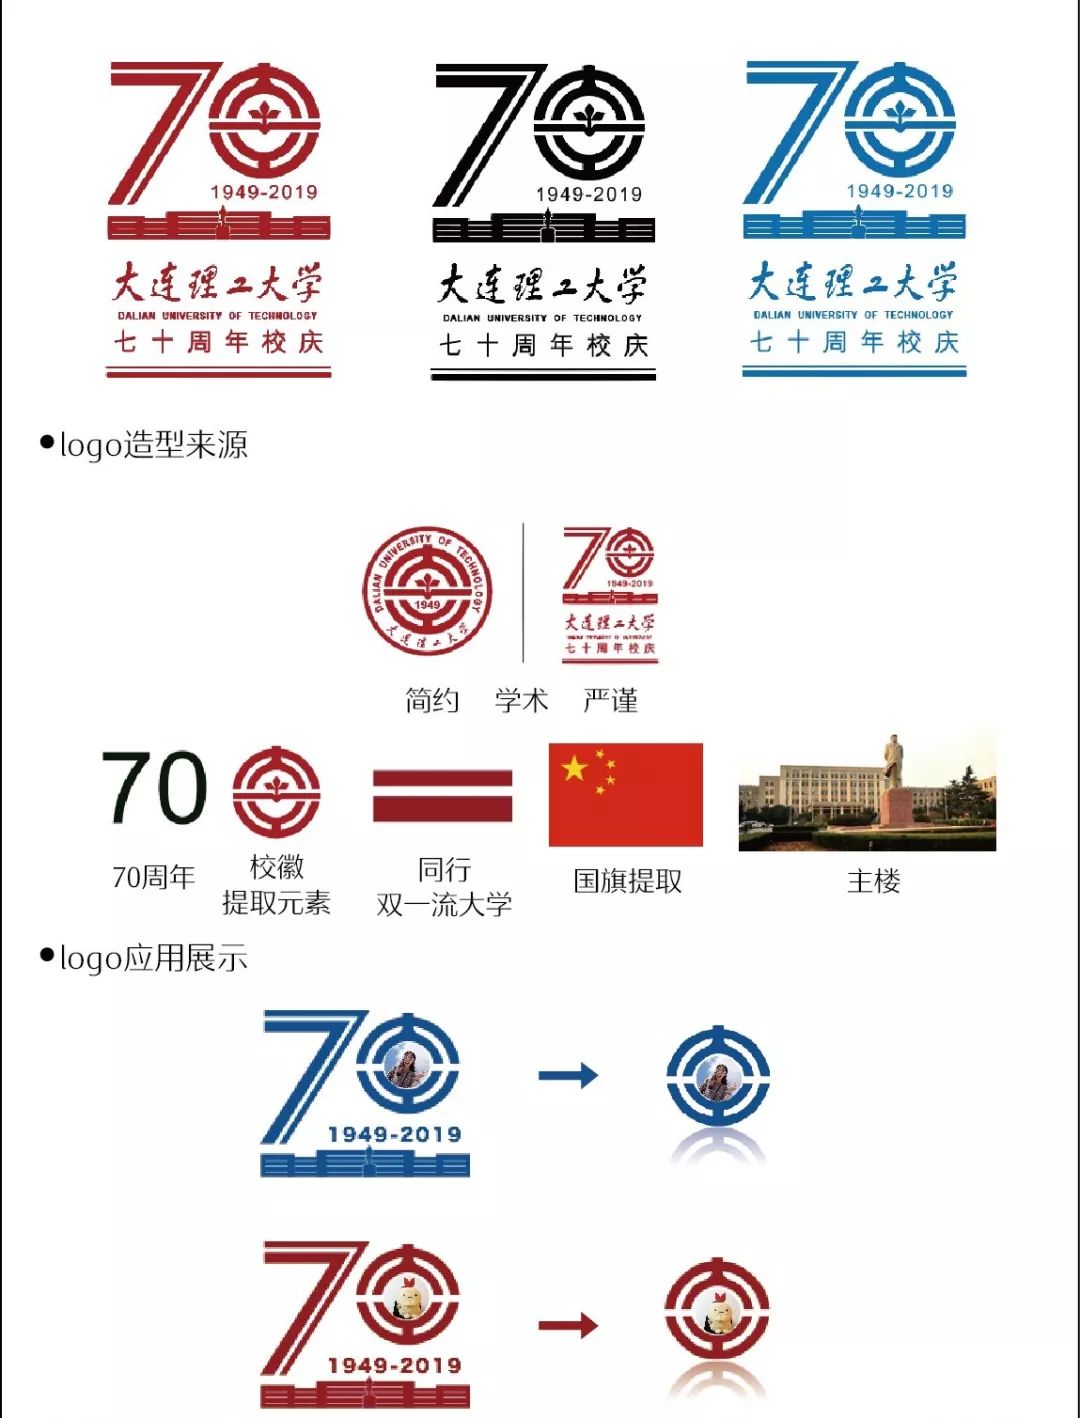 2月27日,大连理工大学70周年校庆logo首轮投票开启,5天时间内,共有近